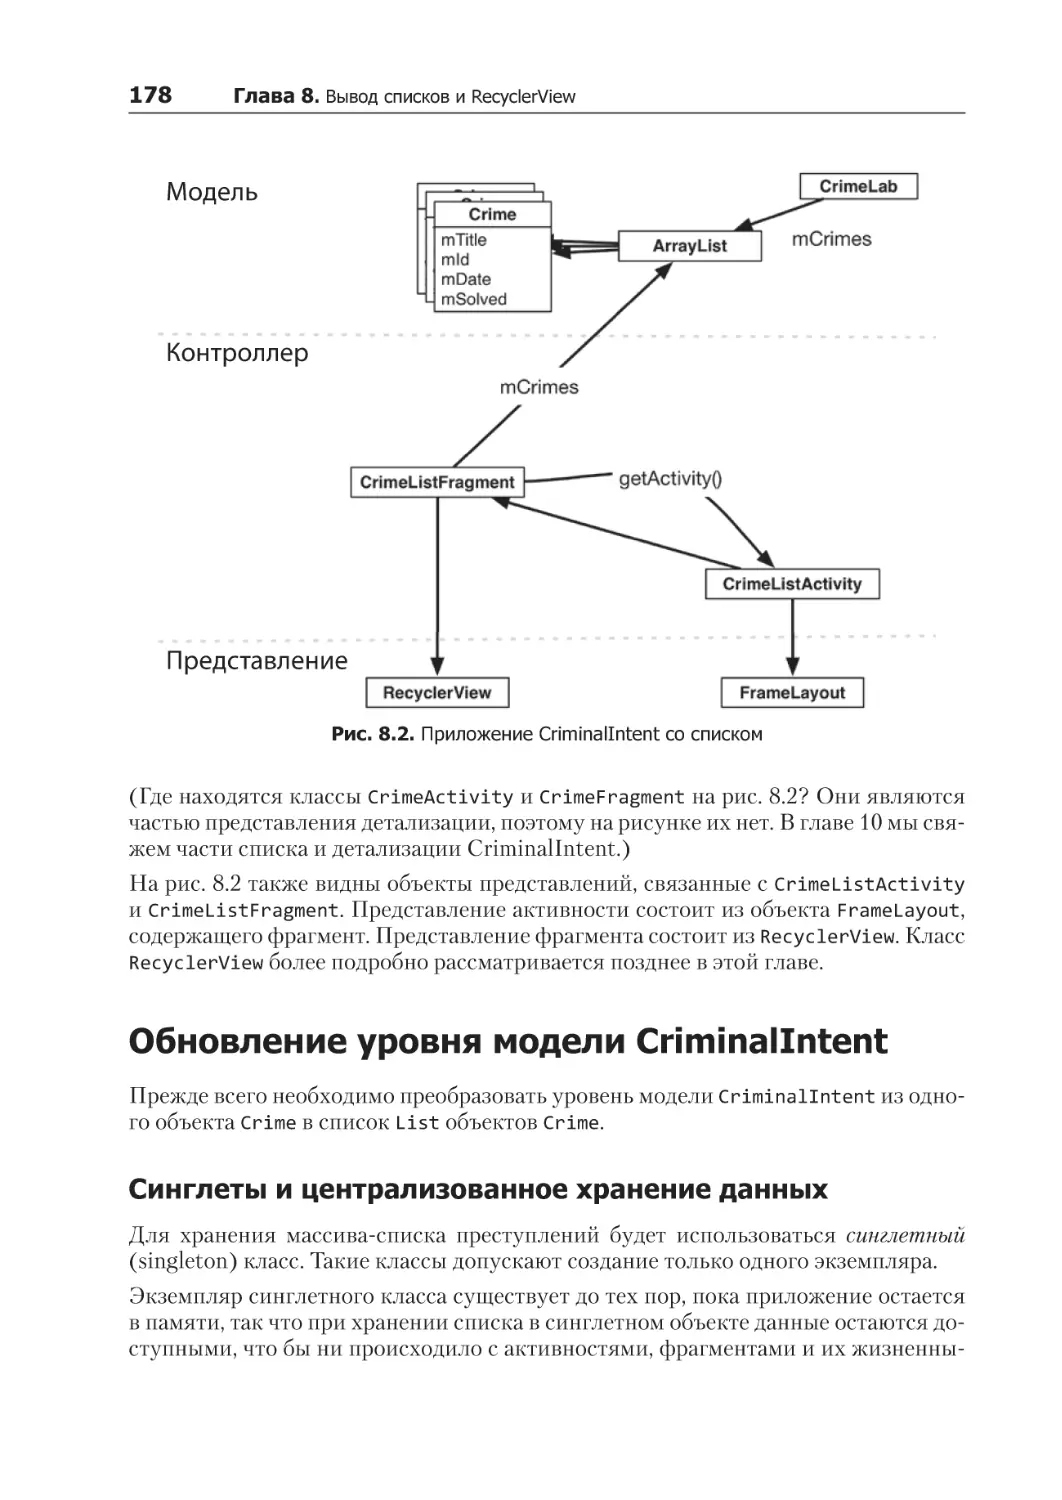 Обновление уровня модели CriminalIntent
Синглеты и централизованное хранение данных